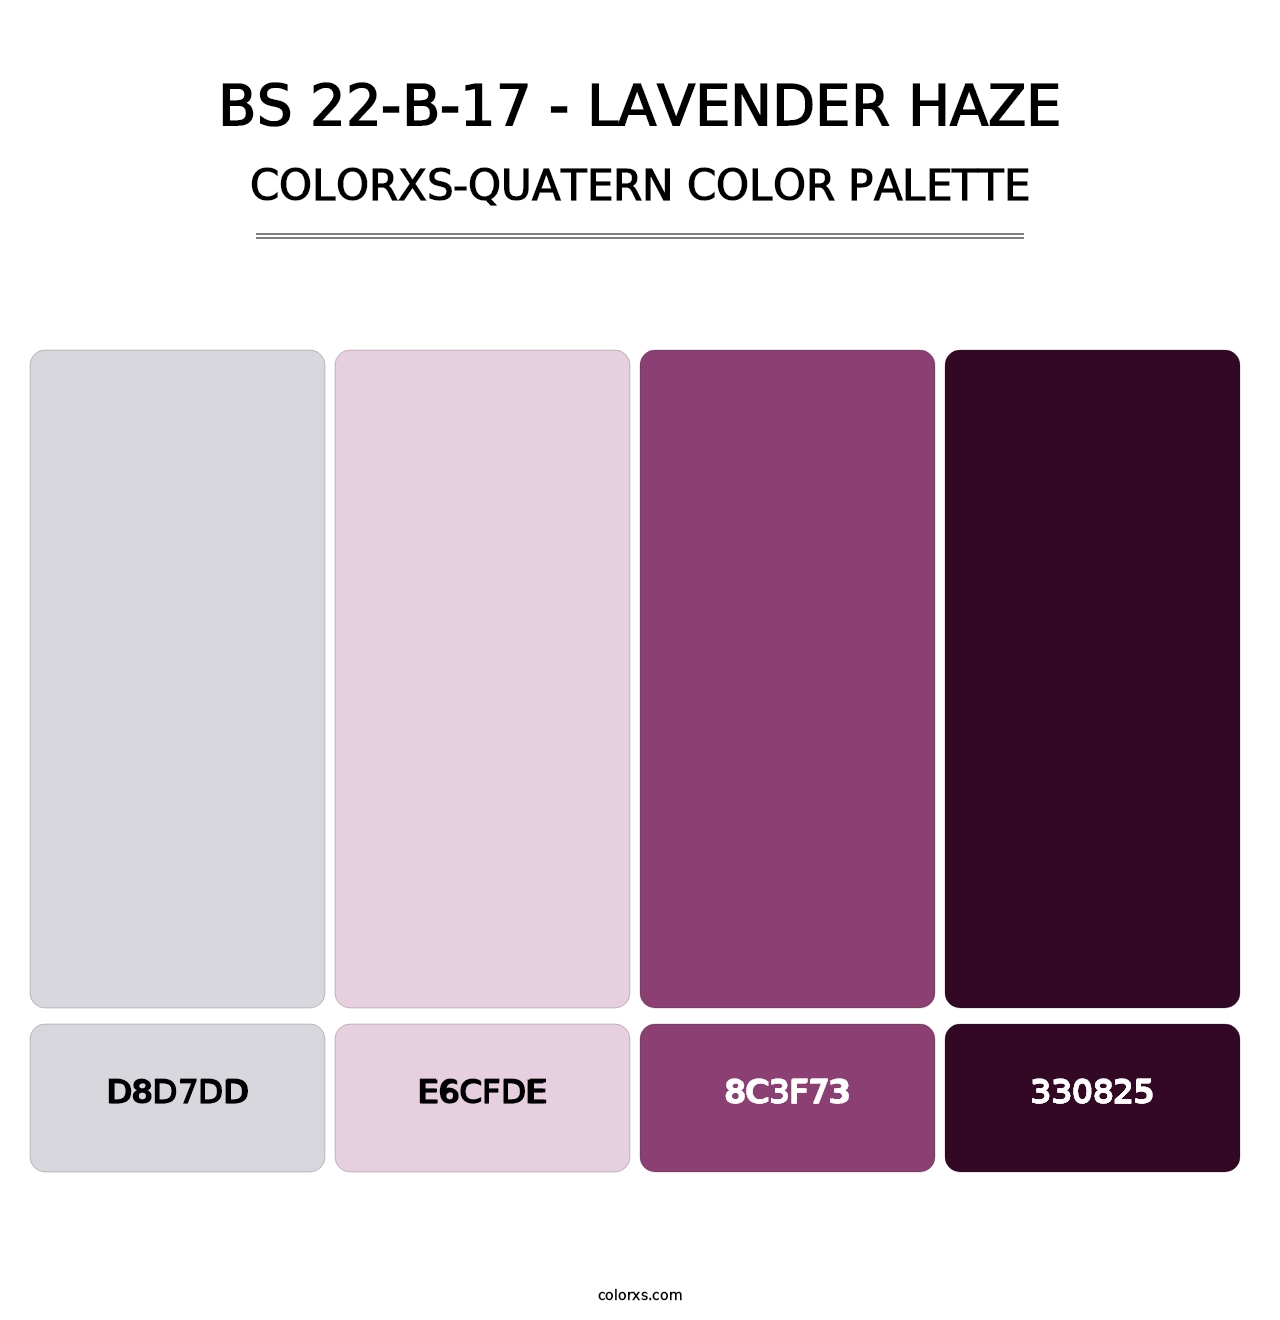 BS 22-B-17 - Lavender Haze - Colorxs Quatern Palette